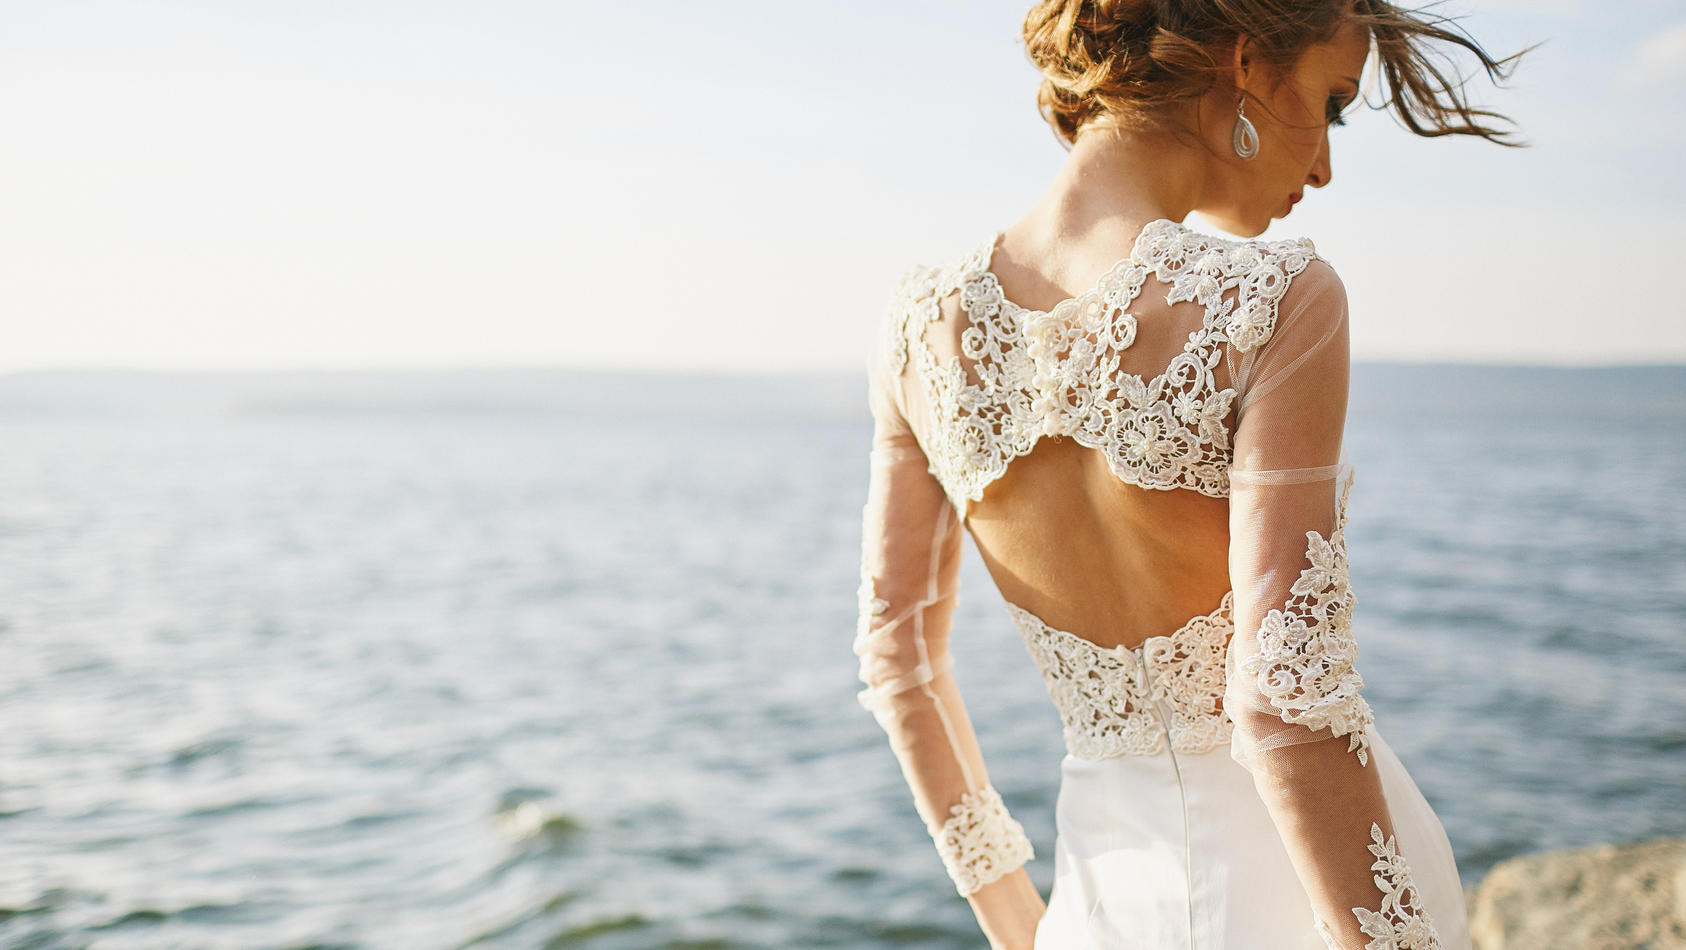 Frau in Hochzeitskleid am Strand.